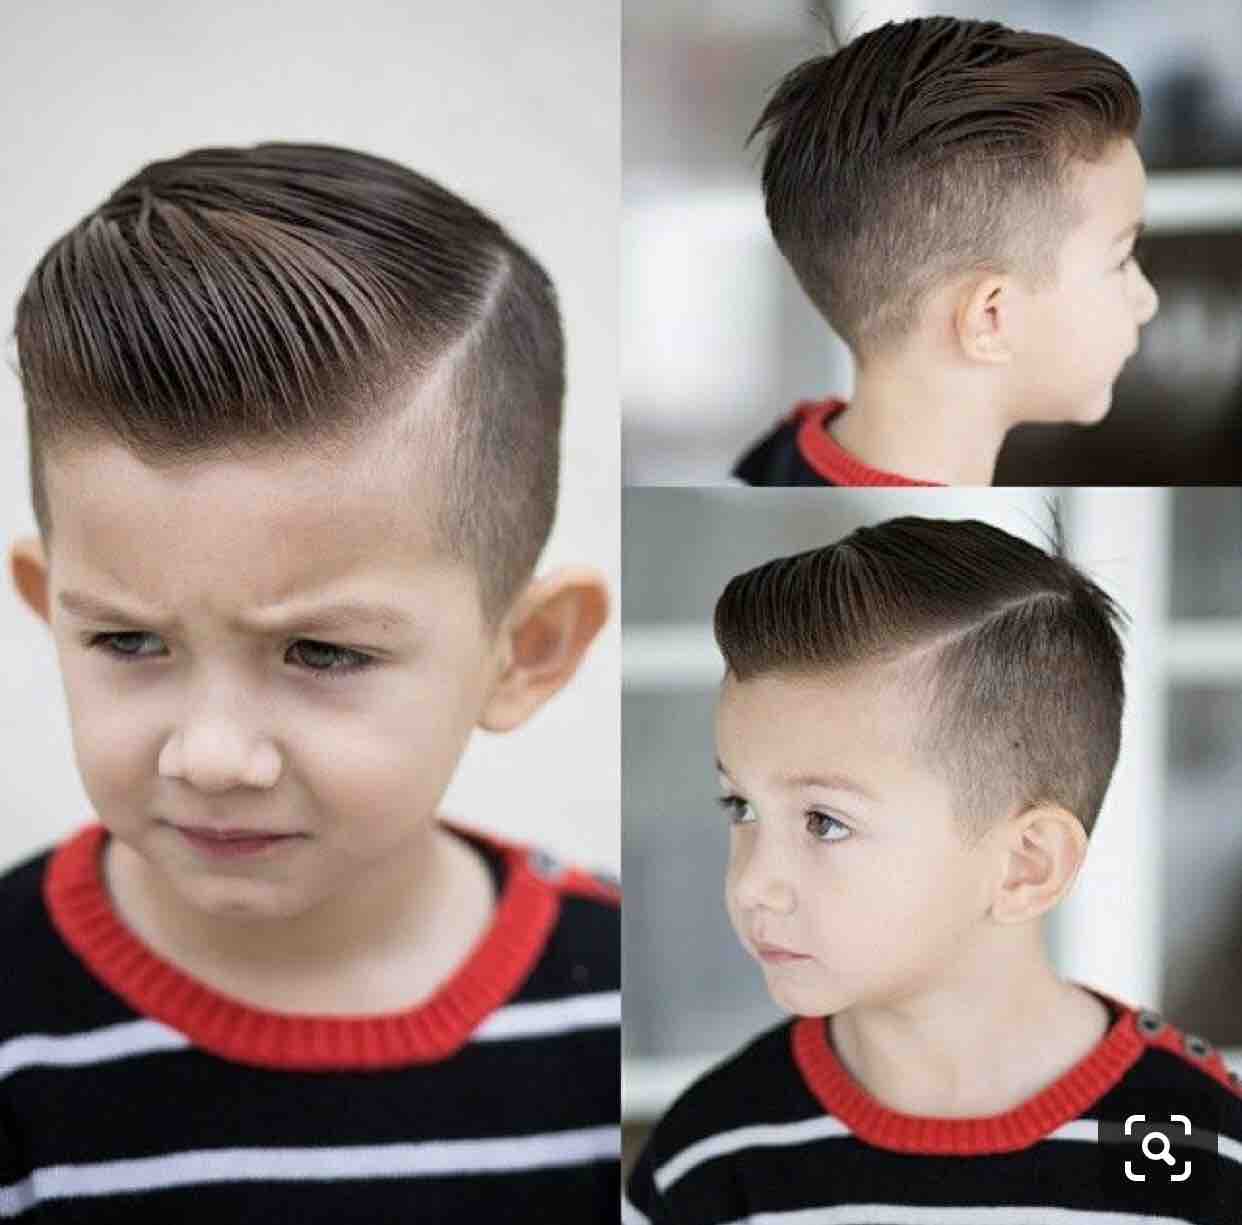 Kids Hair Cut